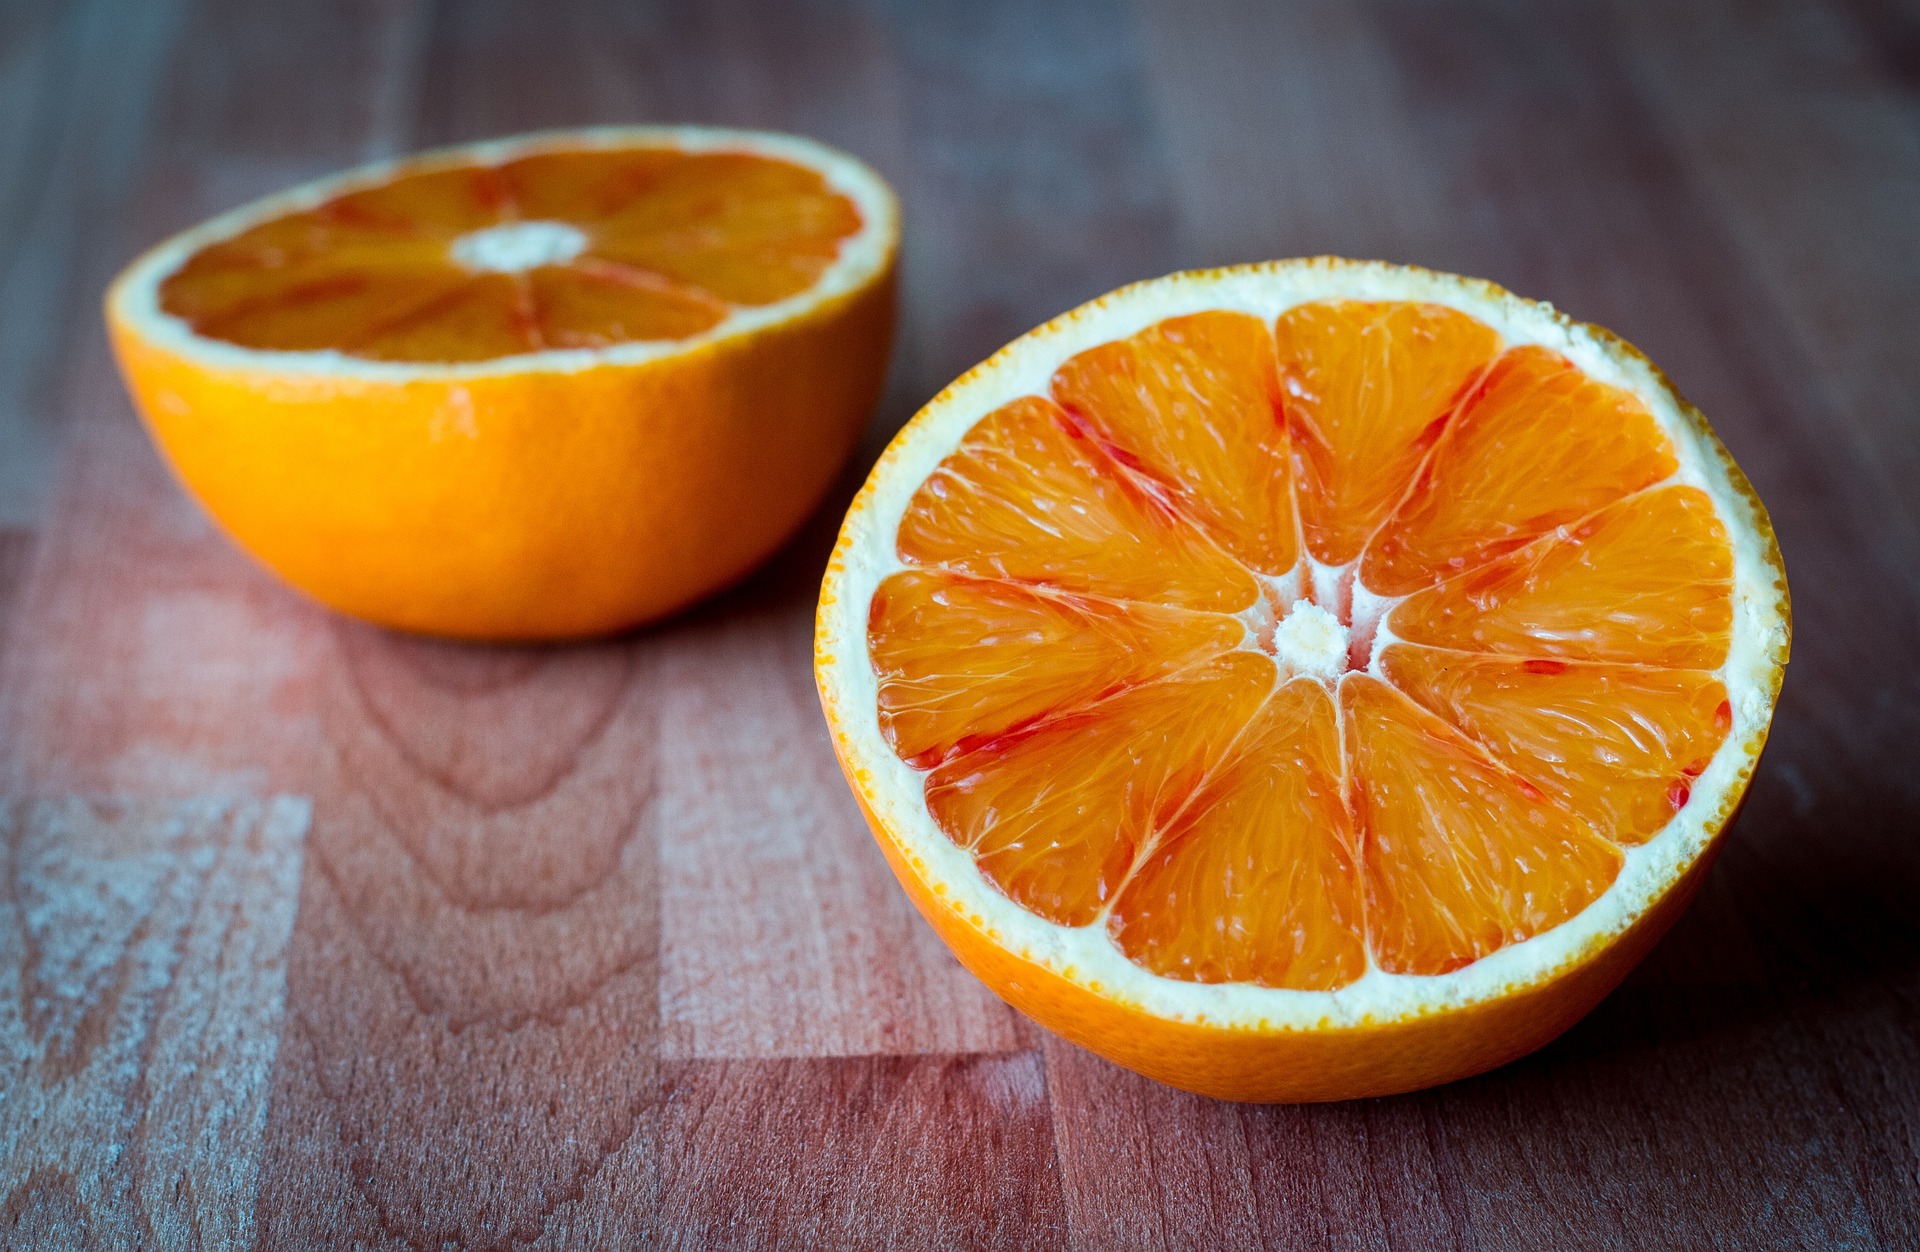 Dos mitades de una naranja.